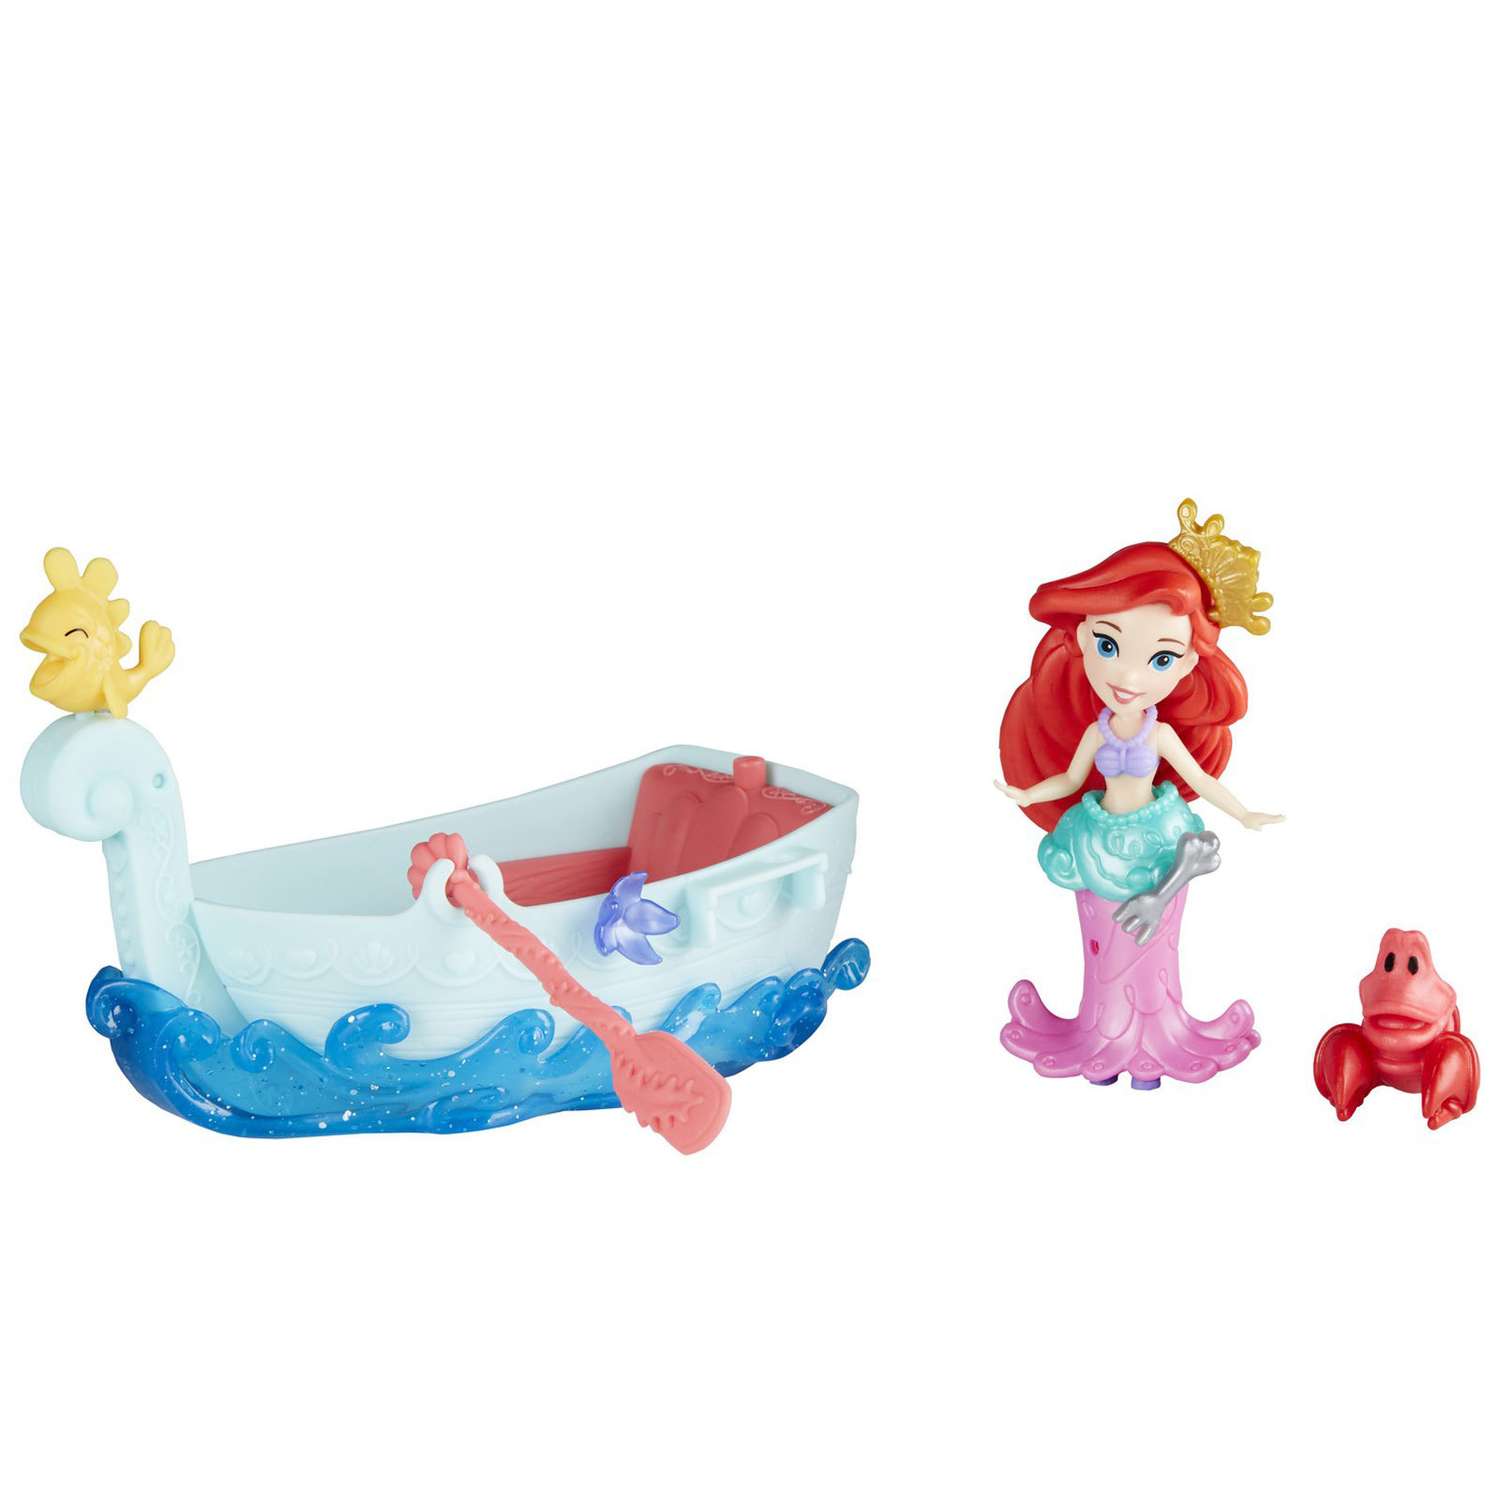 Набор Princess Disney Фигурка и лодка в ассортименте E0068EU4 E0068EU4 - фото 13